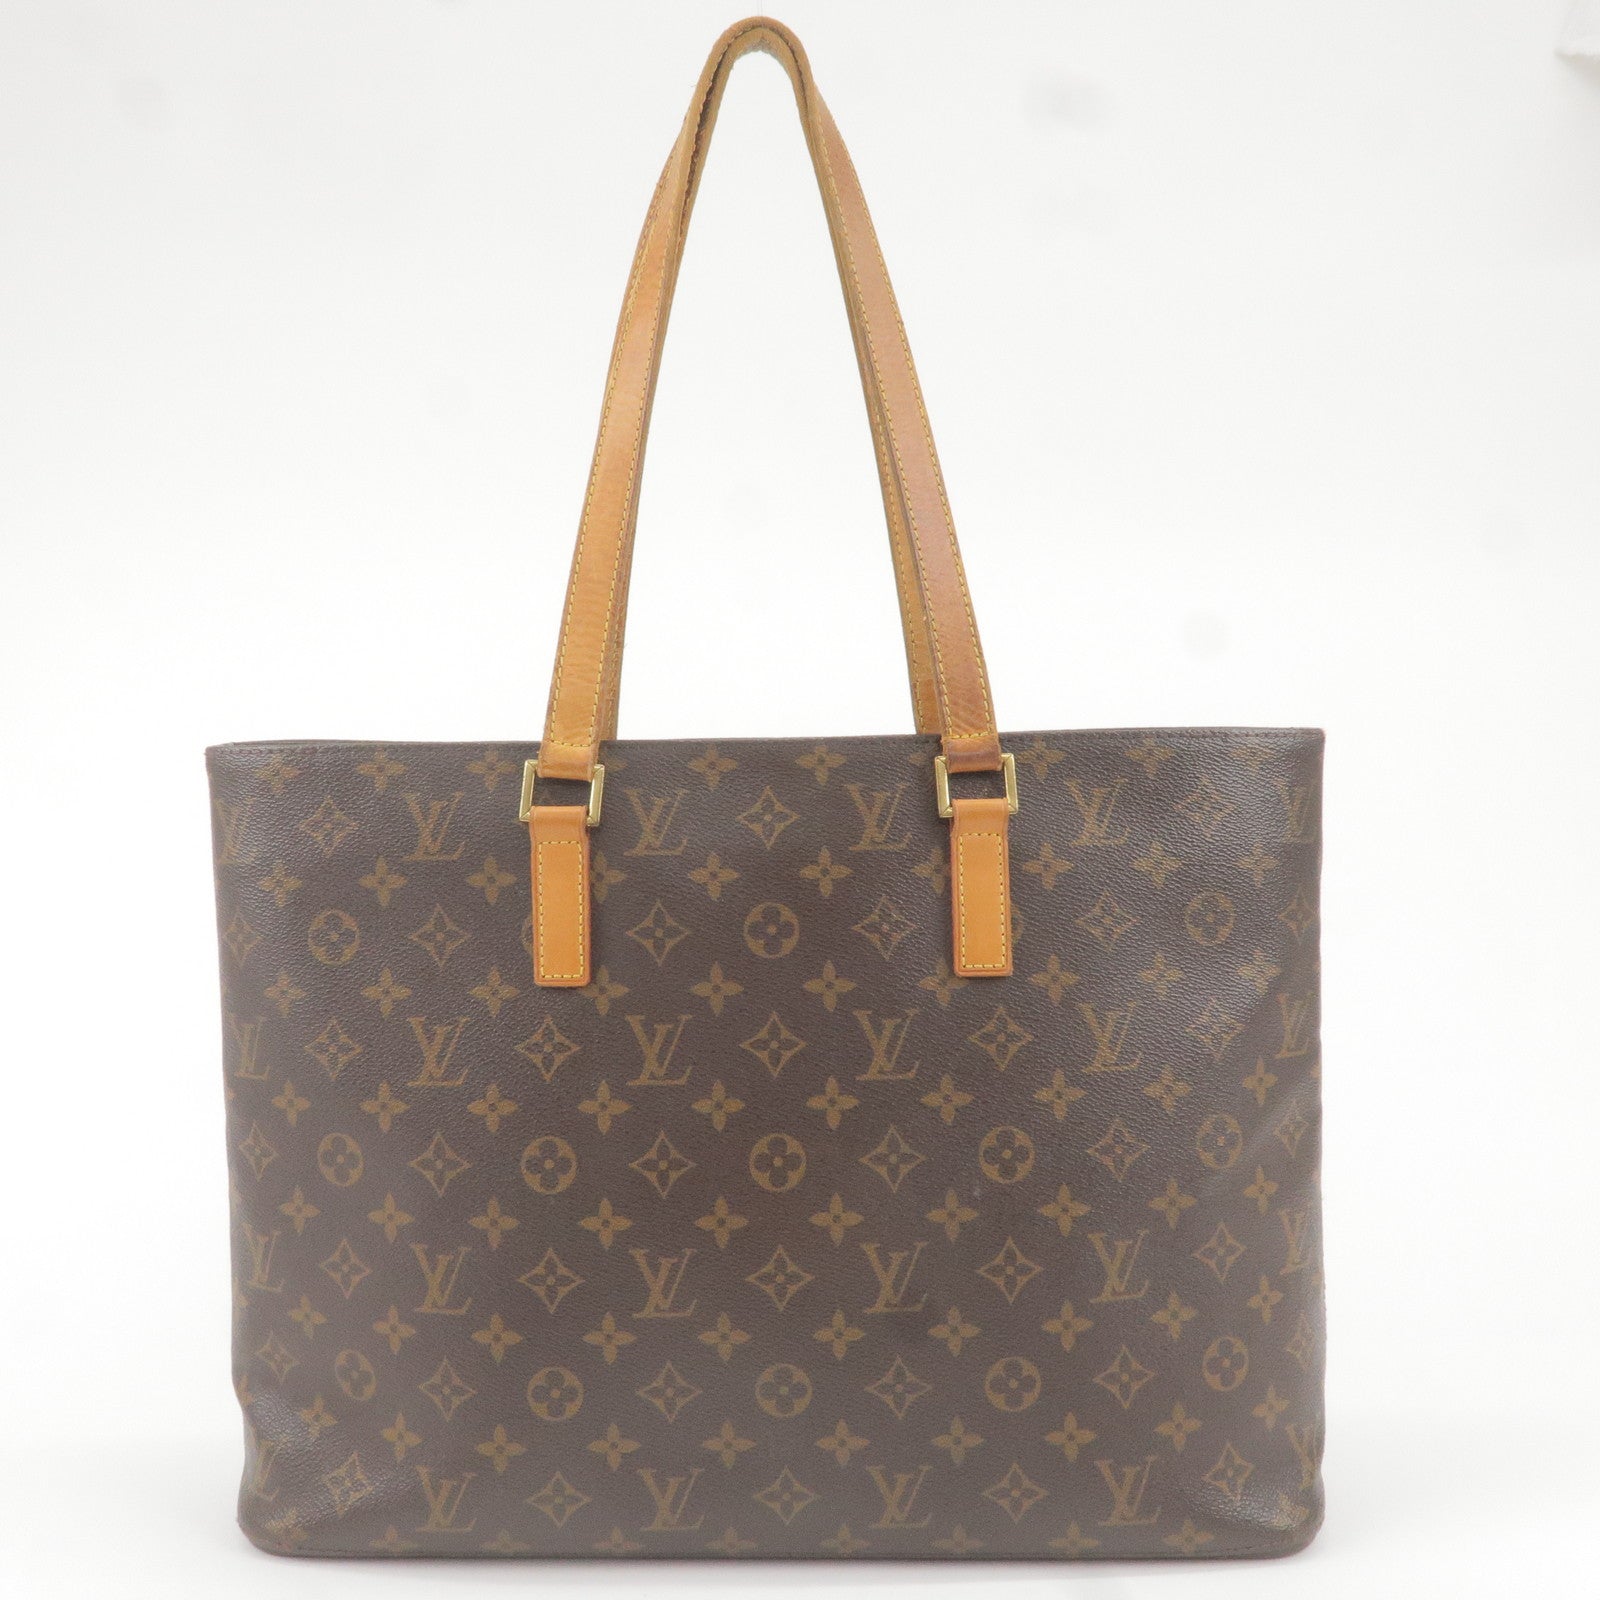 Louis Vuitton Buci Bag - love the Lux